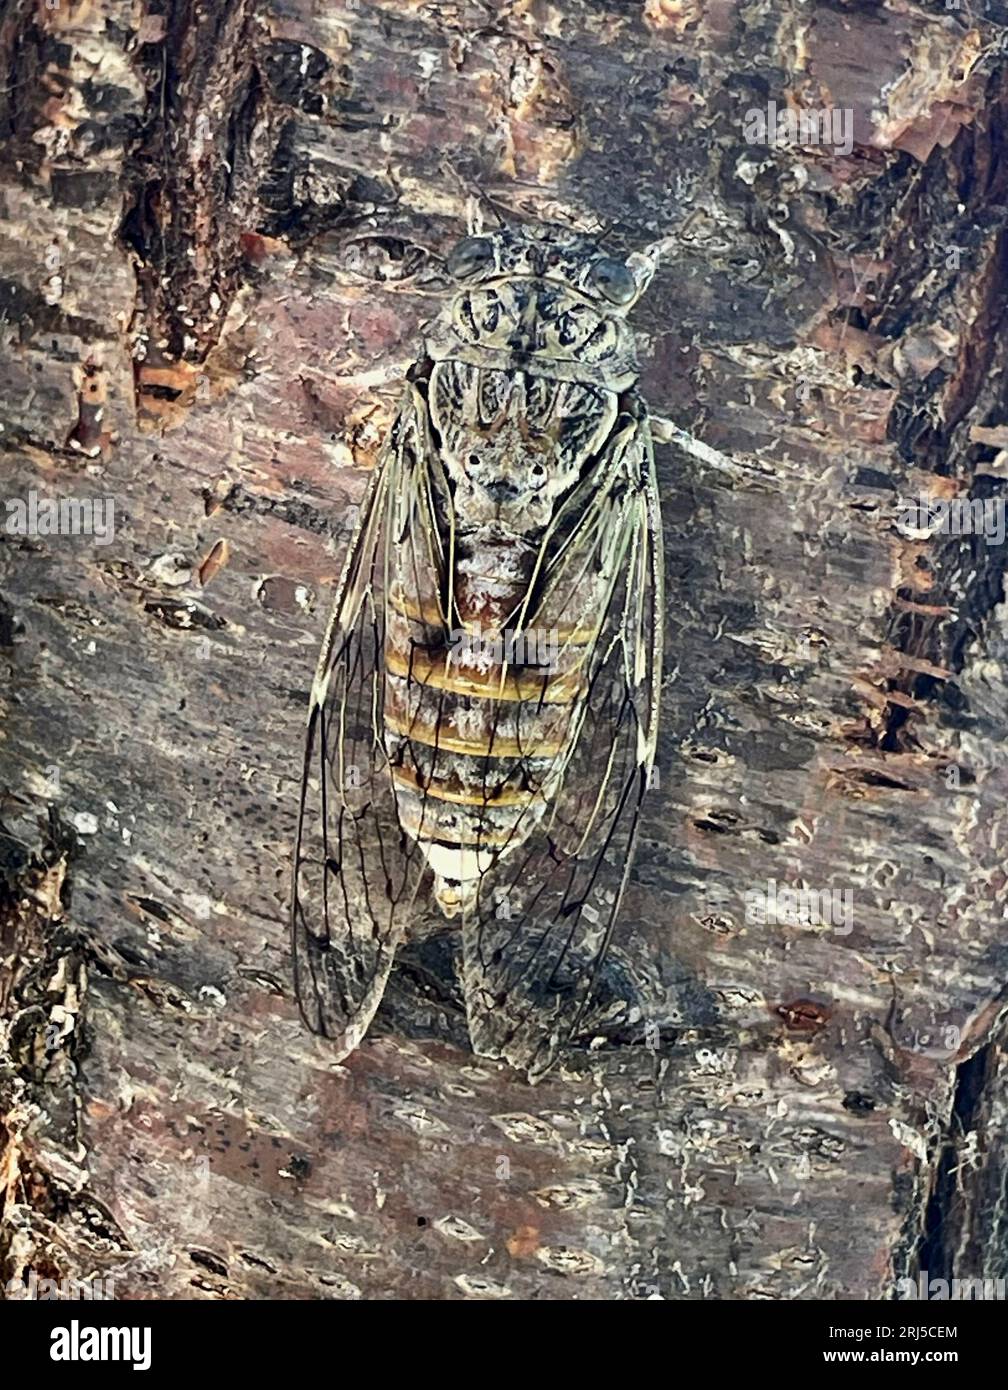 Una Cicada in Grecia. Le cicale hanno occhi ben visibili, antenne corte e ali frontali membrane. Hanno una canzone eccezionalmente alta, Foto Stock